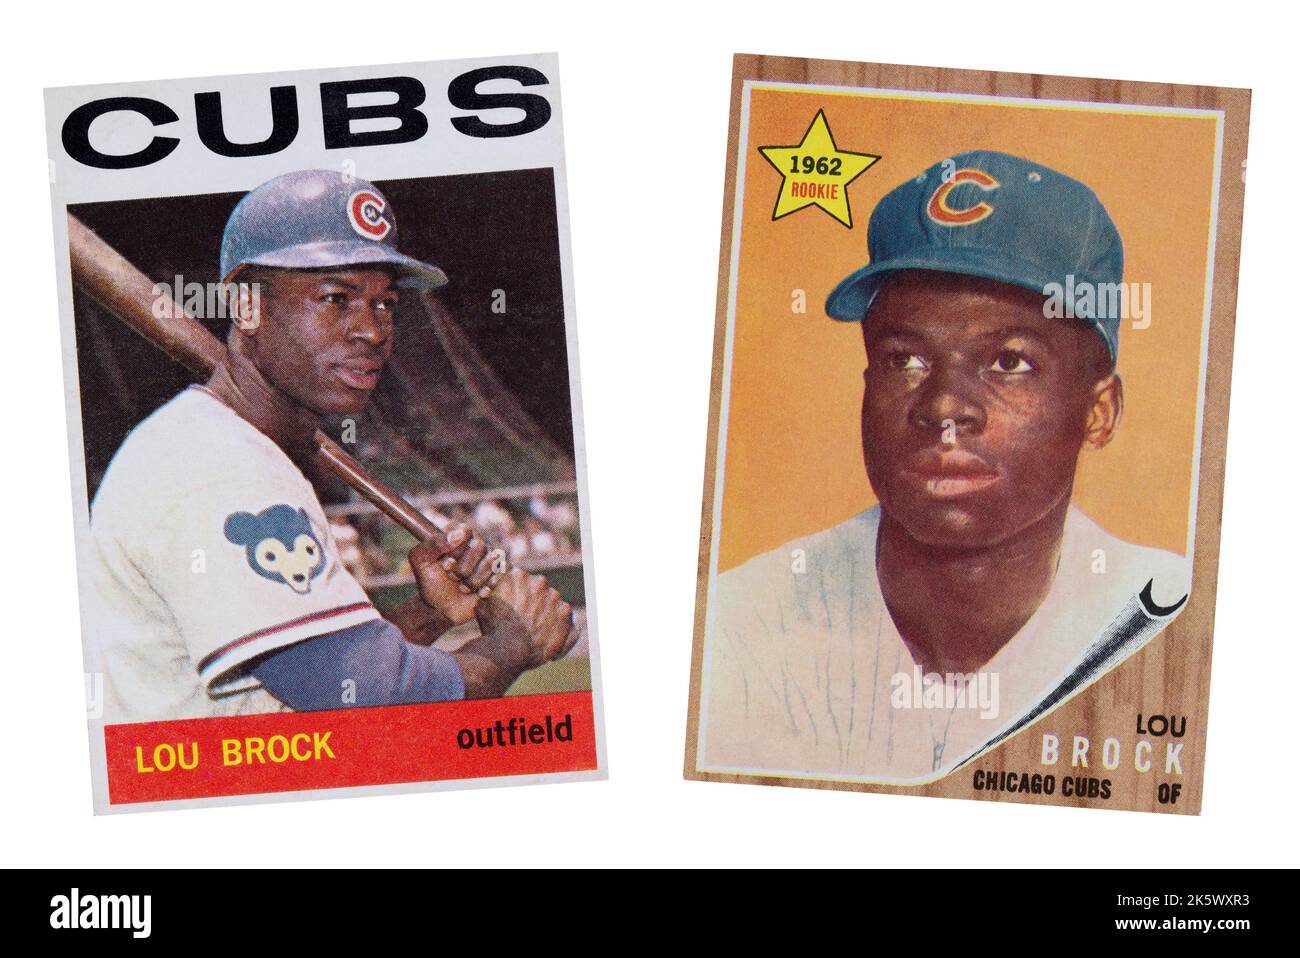 1964 Chicago Cubs Baseballkarte von Lou Brock in seinem letzten Jahr mit den Jungen und seiner 1962 Rookie-Karte. Lou wurde an die St. Louis Cardinals durin Handel gebracht Stockfoto